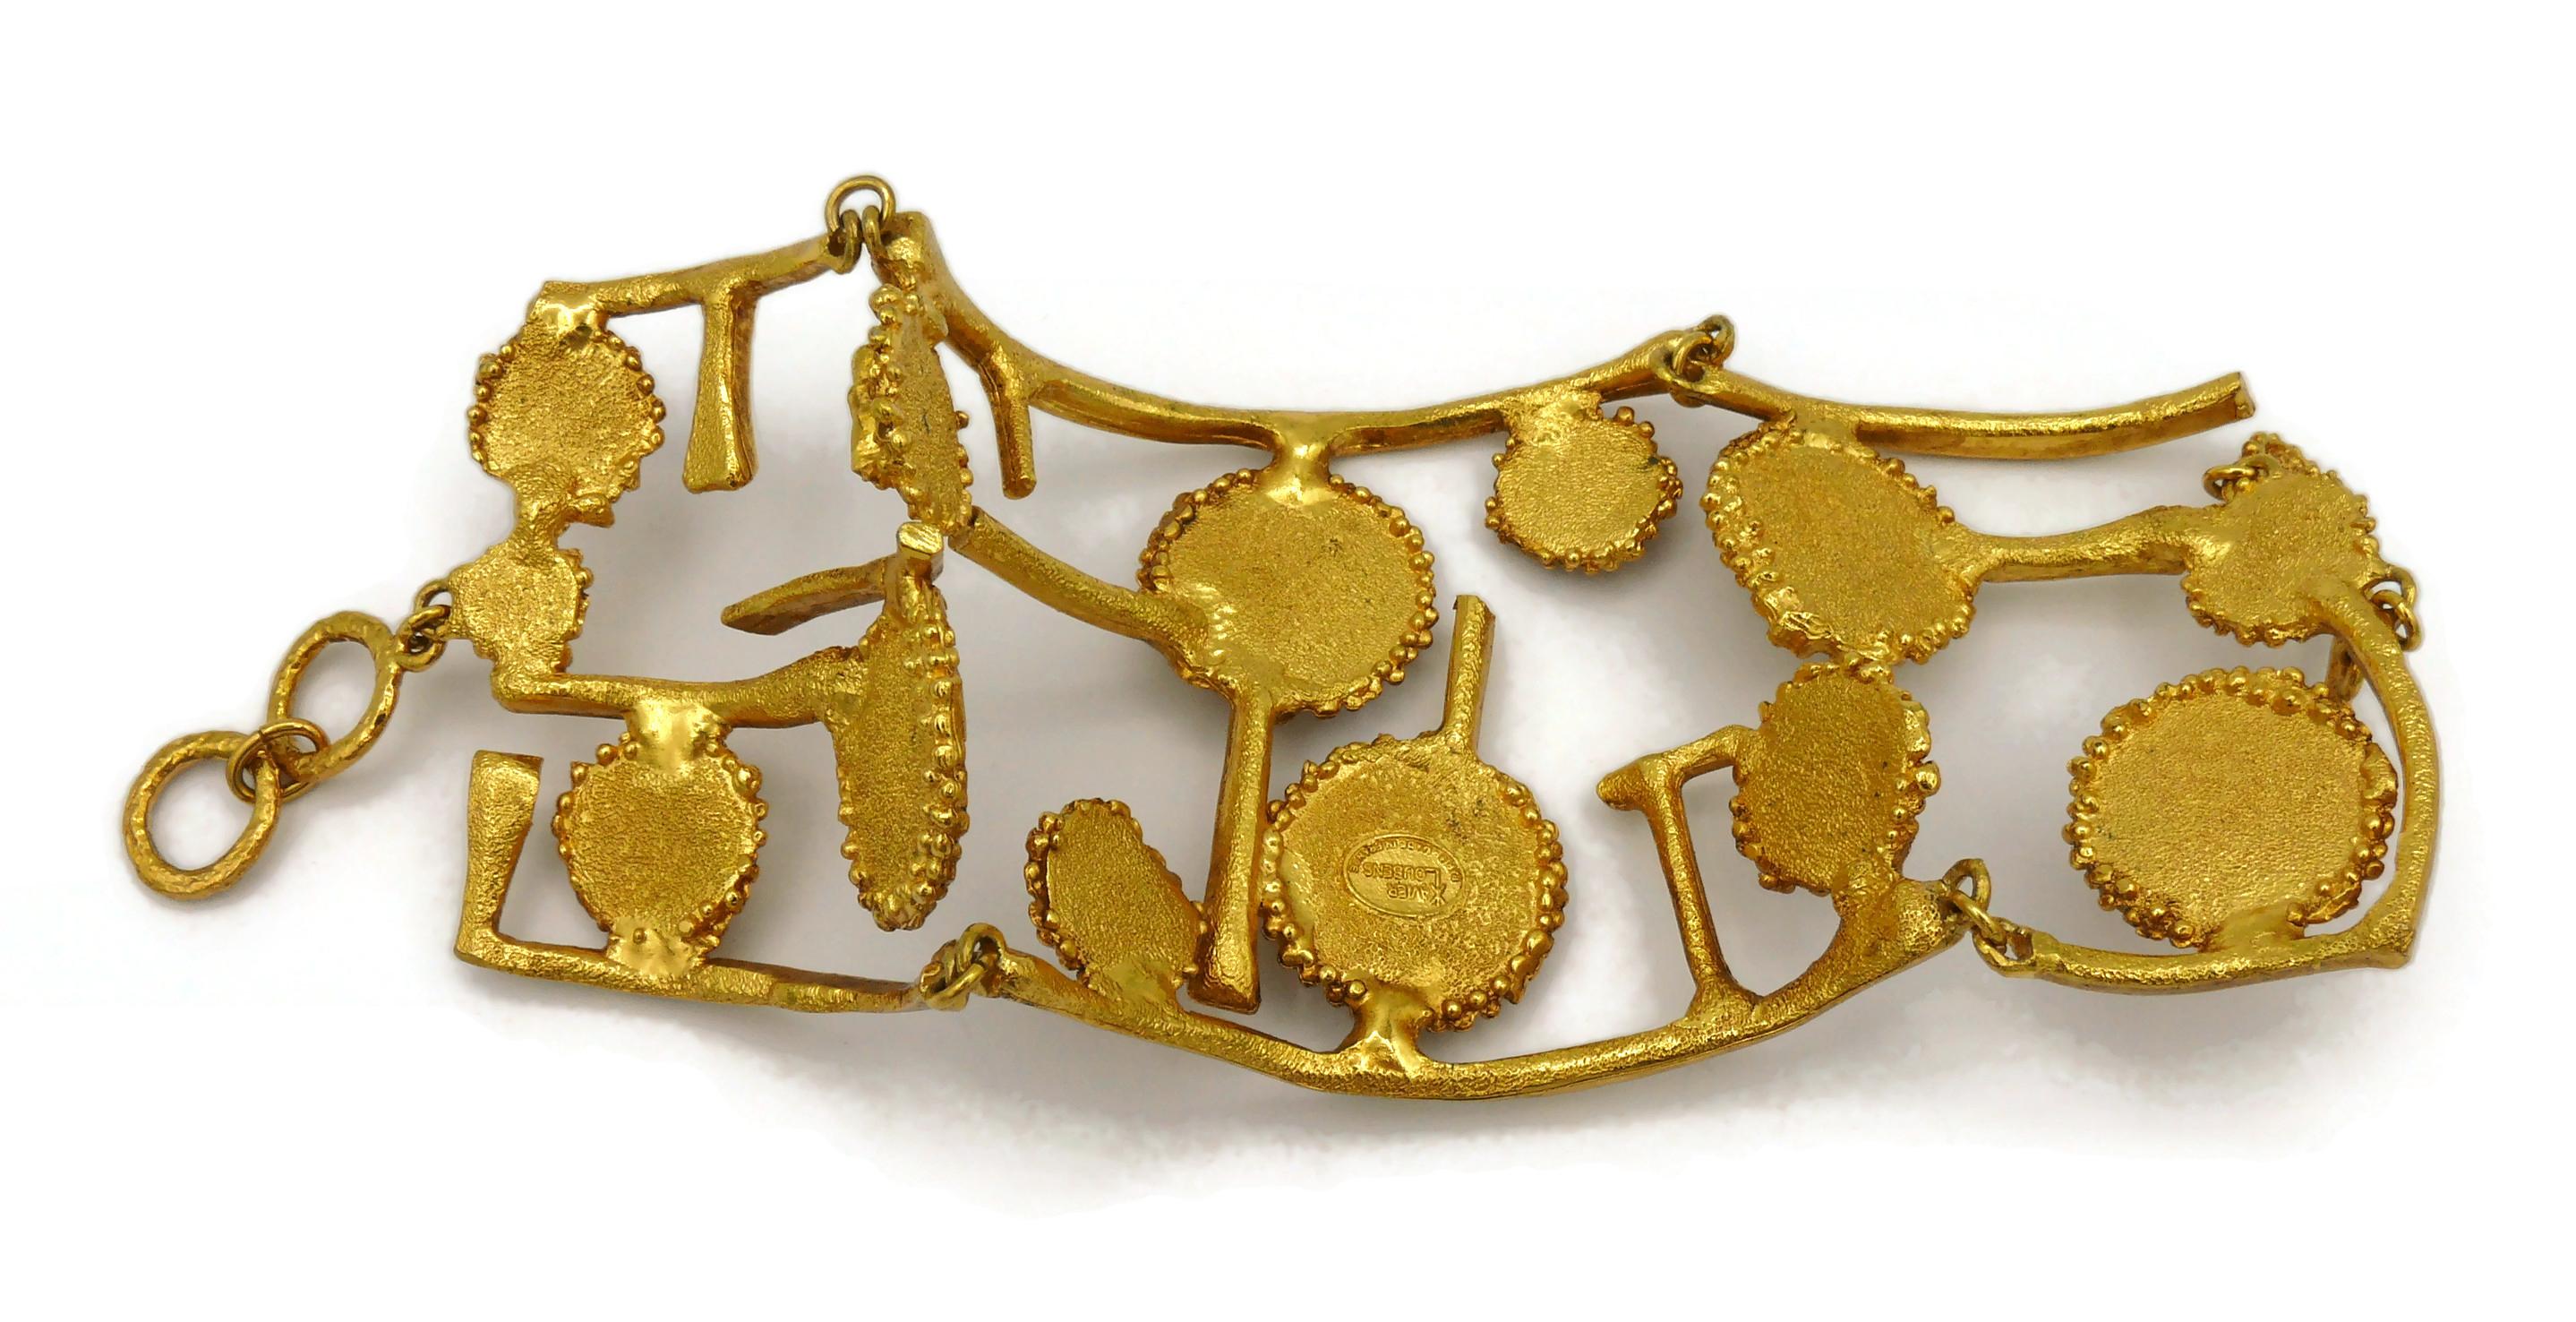 XAVIER LOUBENS Vintage Gold Tone Cuff Bracelet For Sale 9